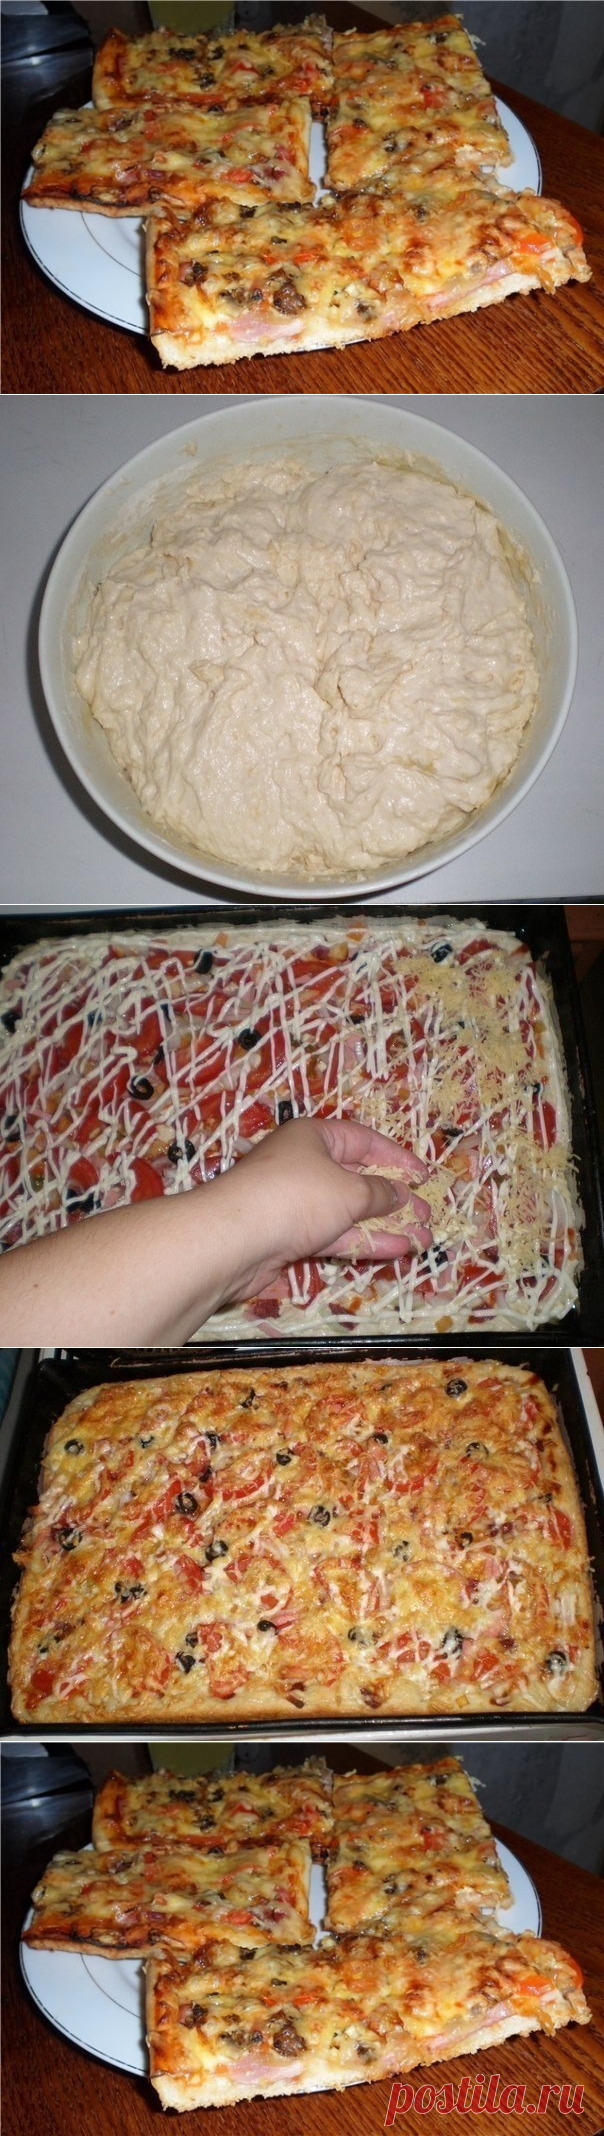 ютуб рецепт пиццы в духовке в домашних условиях фото 18